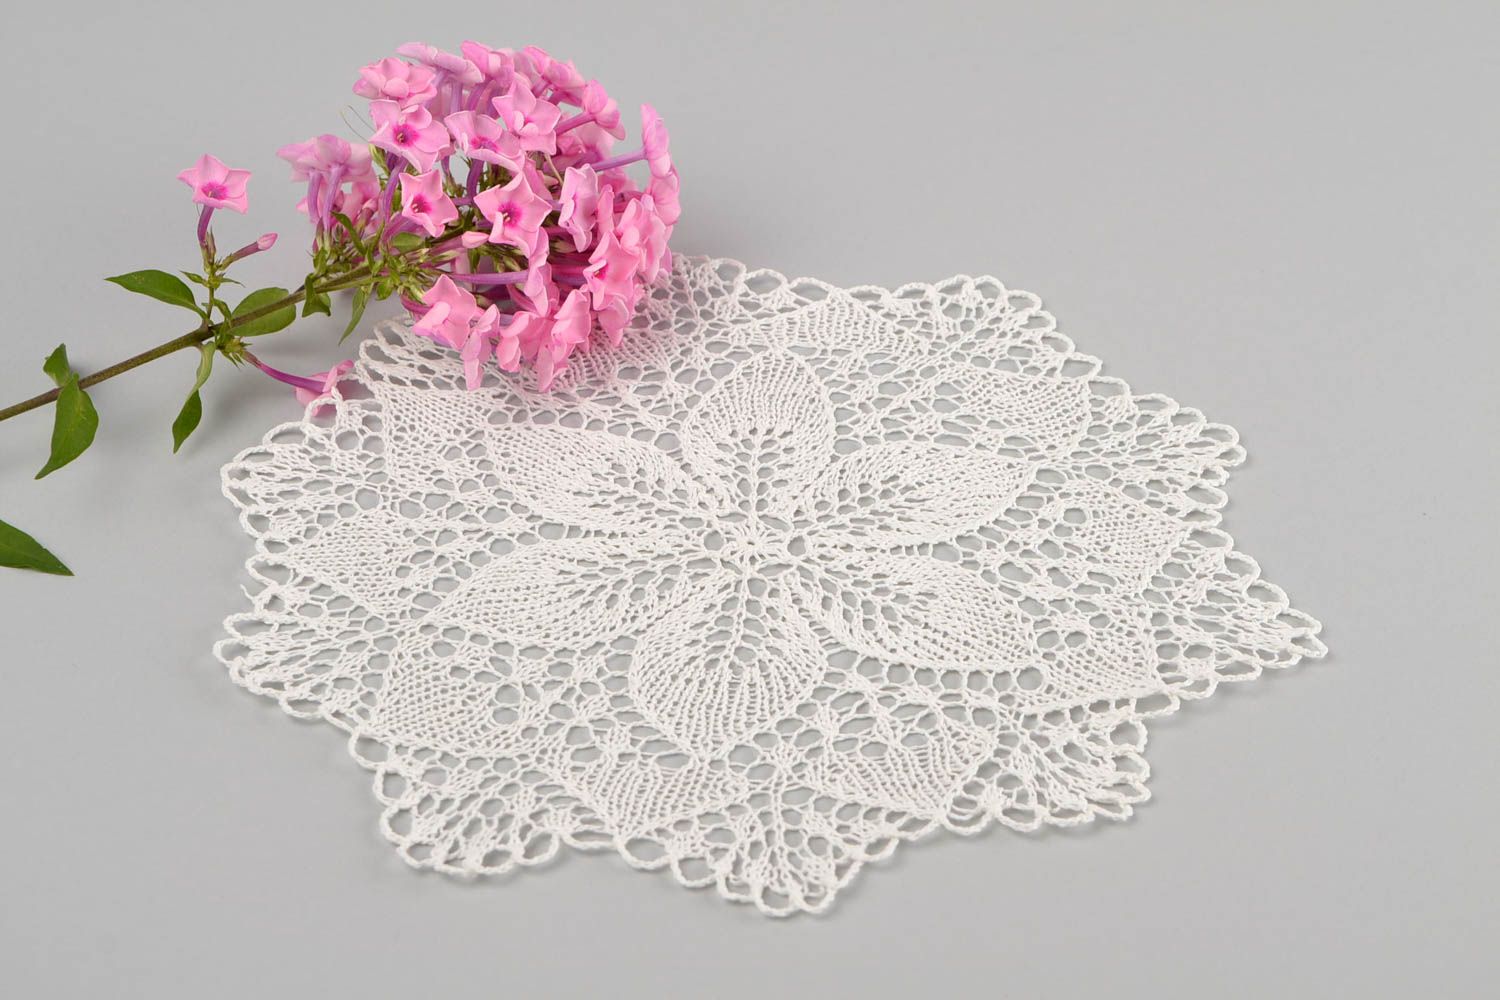 Napperon blanc fait main Textile de table tricoté ajouré Décoration maison photo 1